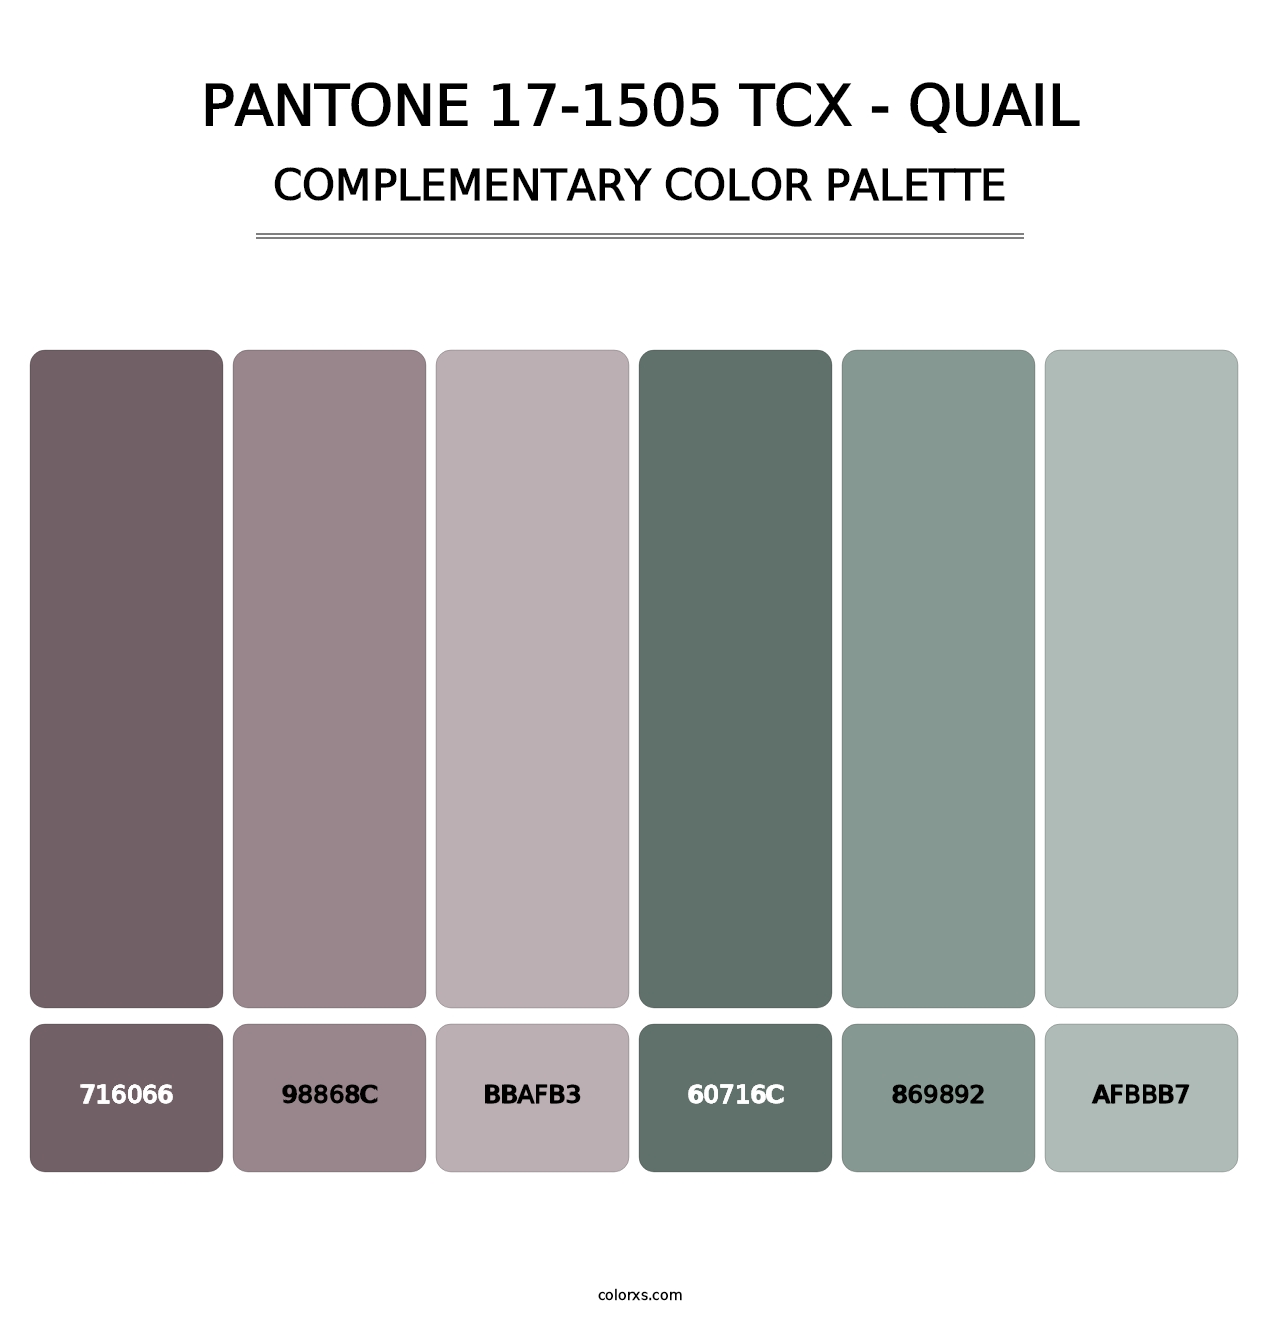 PANTONE 17-1505 TCX - Quail - Complementary Color Palette